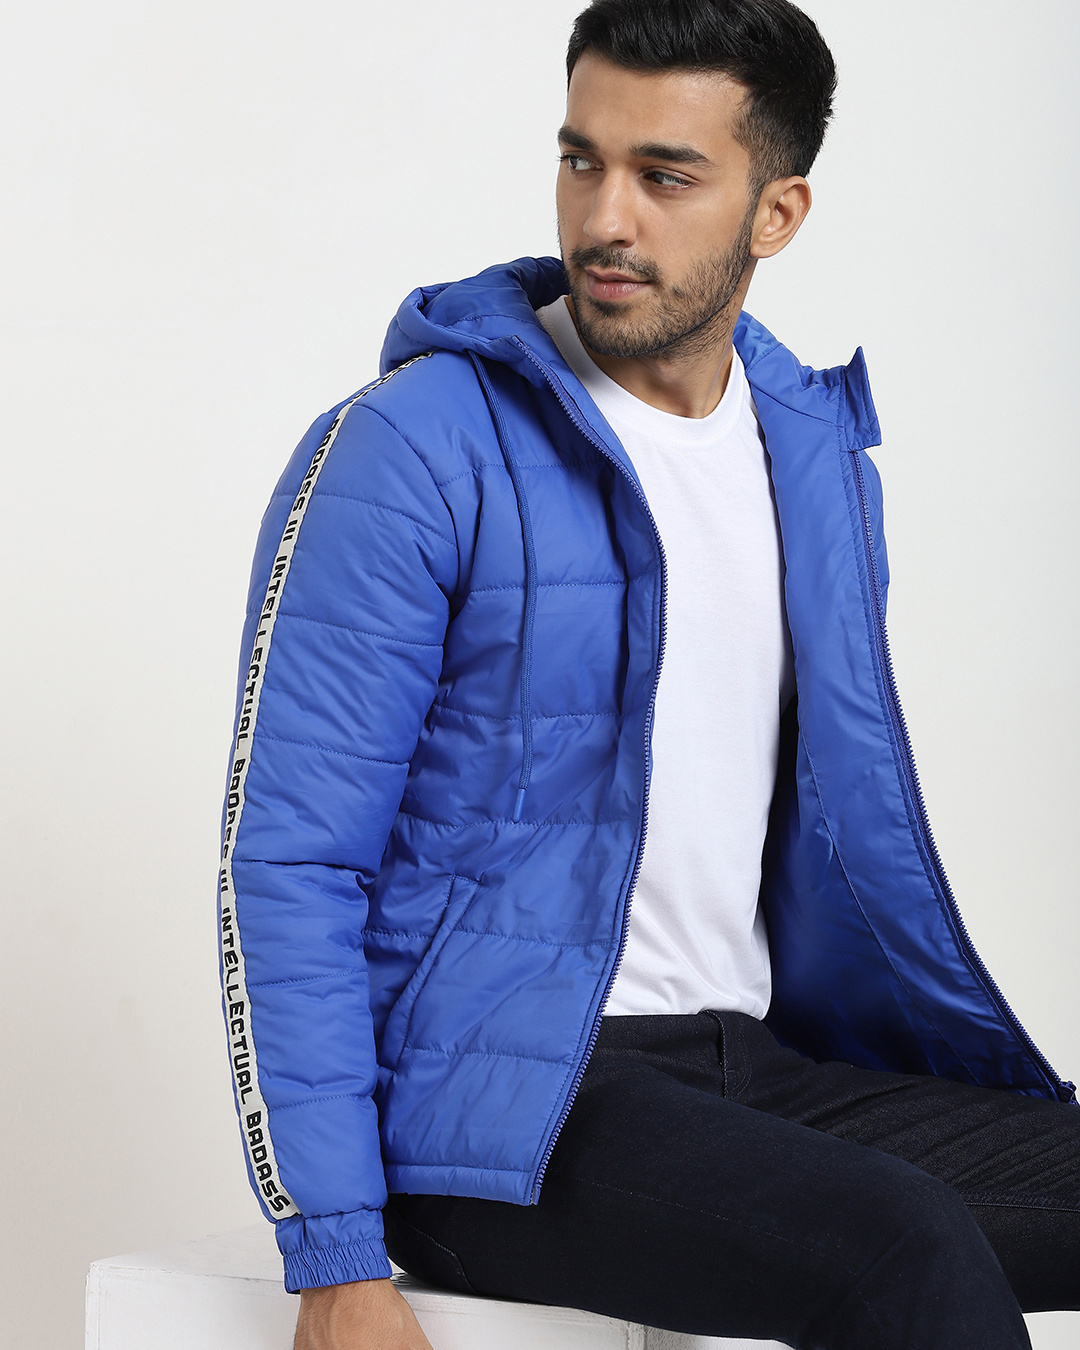 Buy Men's Blue Puffer Jacket Online at Bewakoof